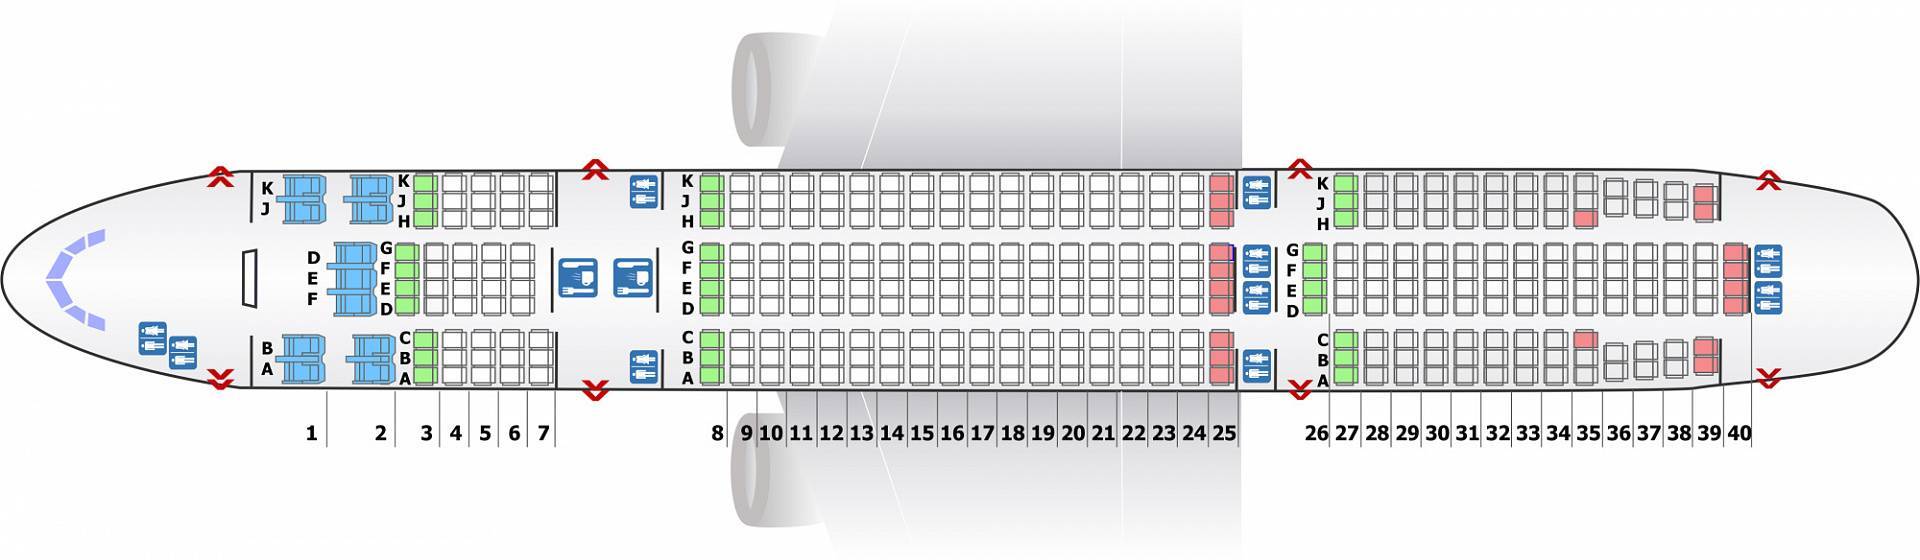 Схема салона и лучшие места boeing 777 аэрофлота | авиакомпании и авиалинии россии и мира